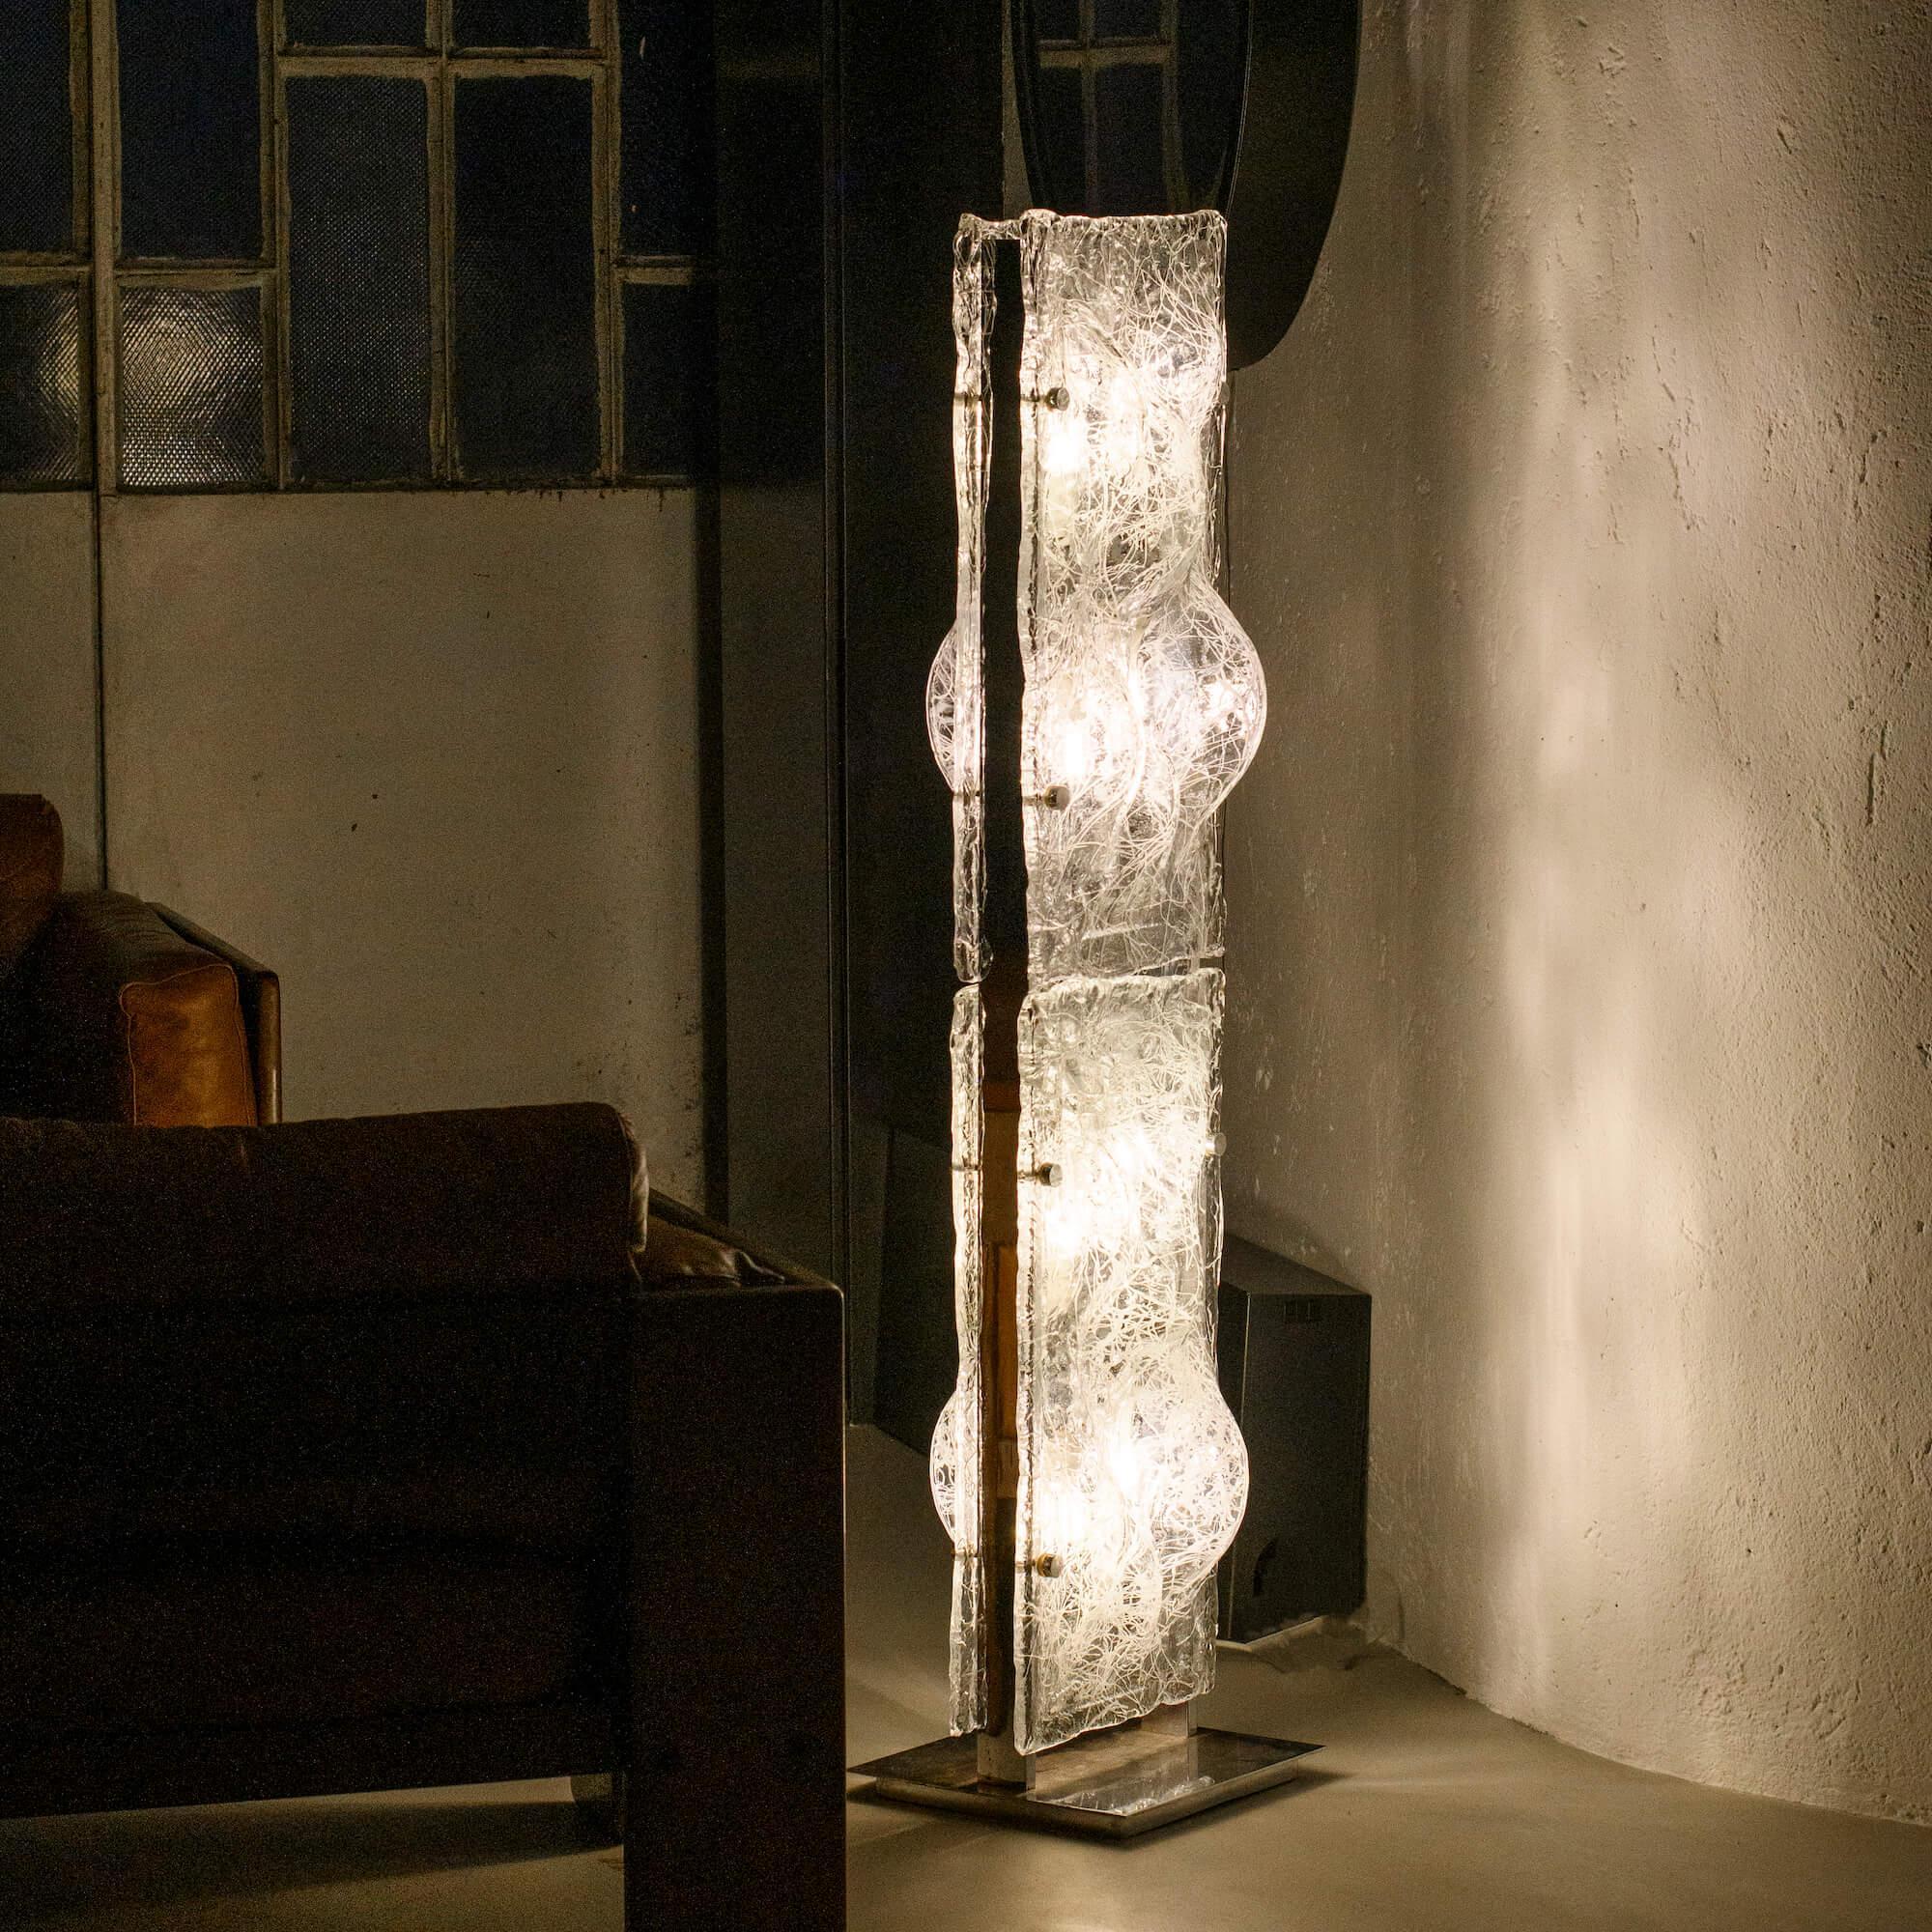 Magnifique lampadaire sculptural vintage de Murano conçu par Toni Zuccheri dans les années 1970. Corps en métal chromé avec quatre panneaux épais en verre moulé, en verre transparent avec des décorations blanches incrustées. Absolument intemporelle